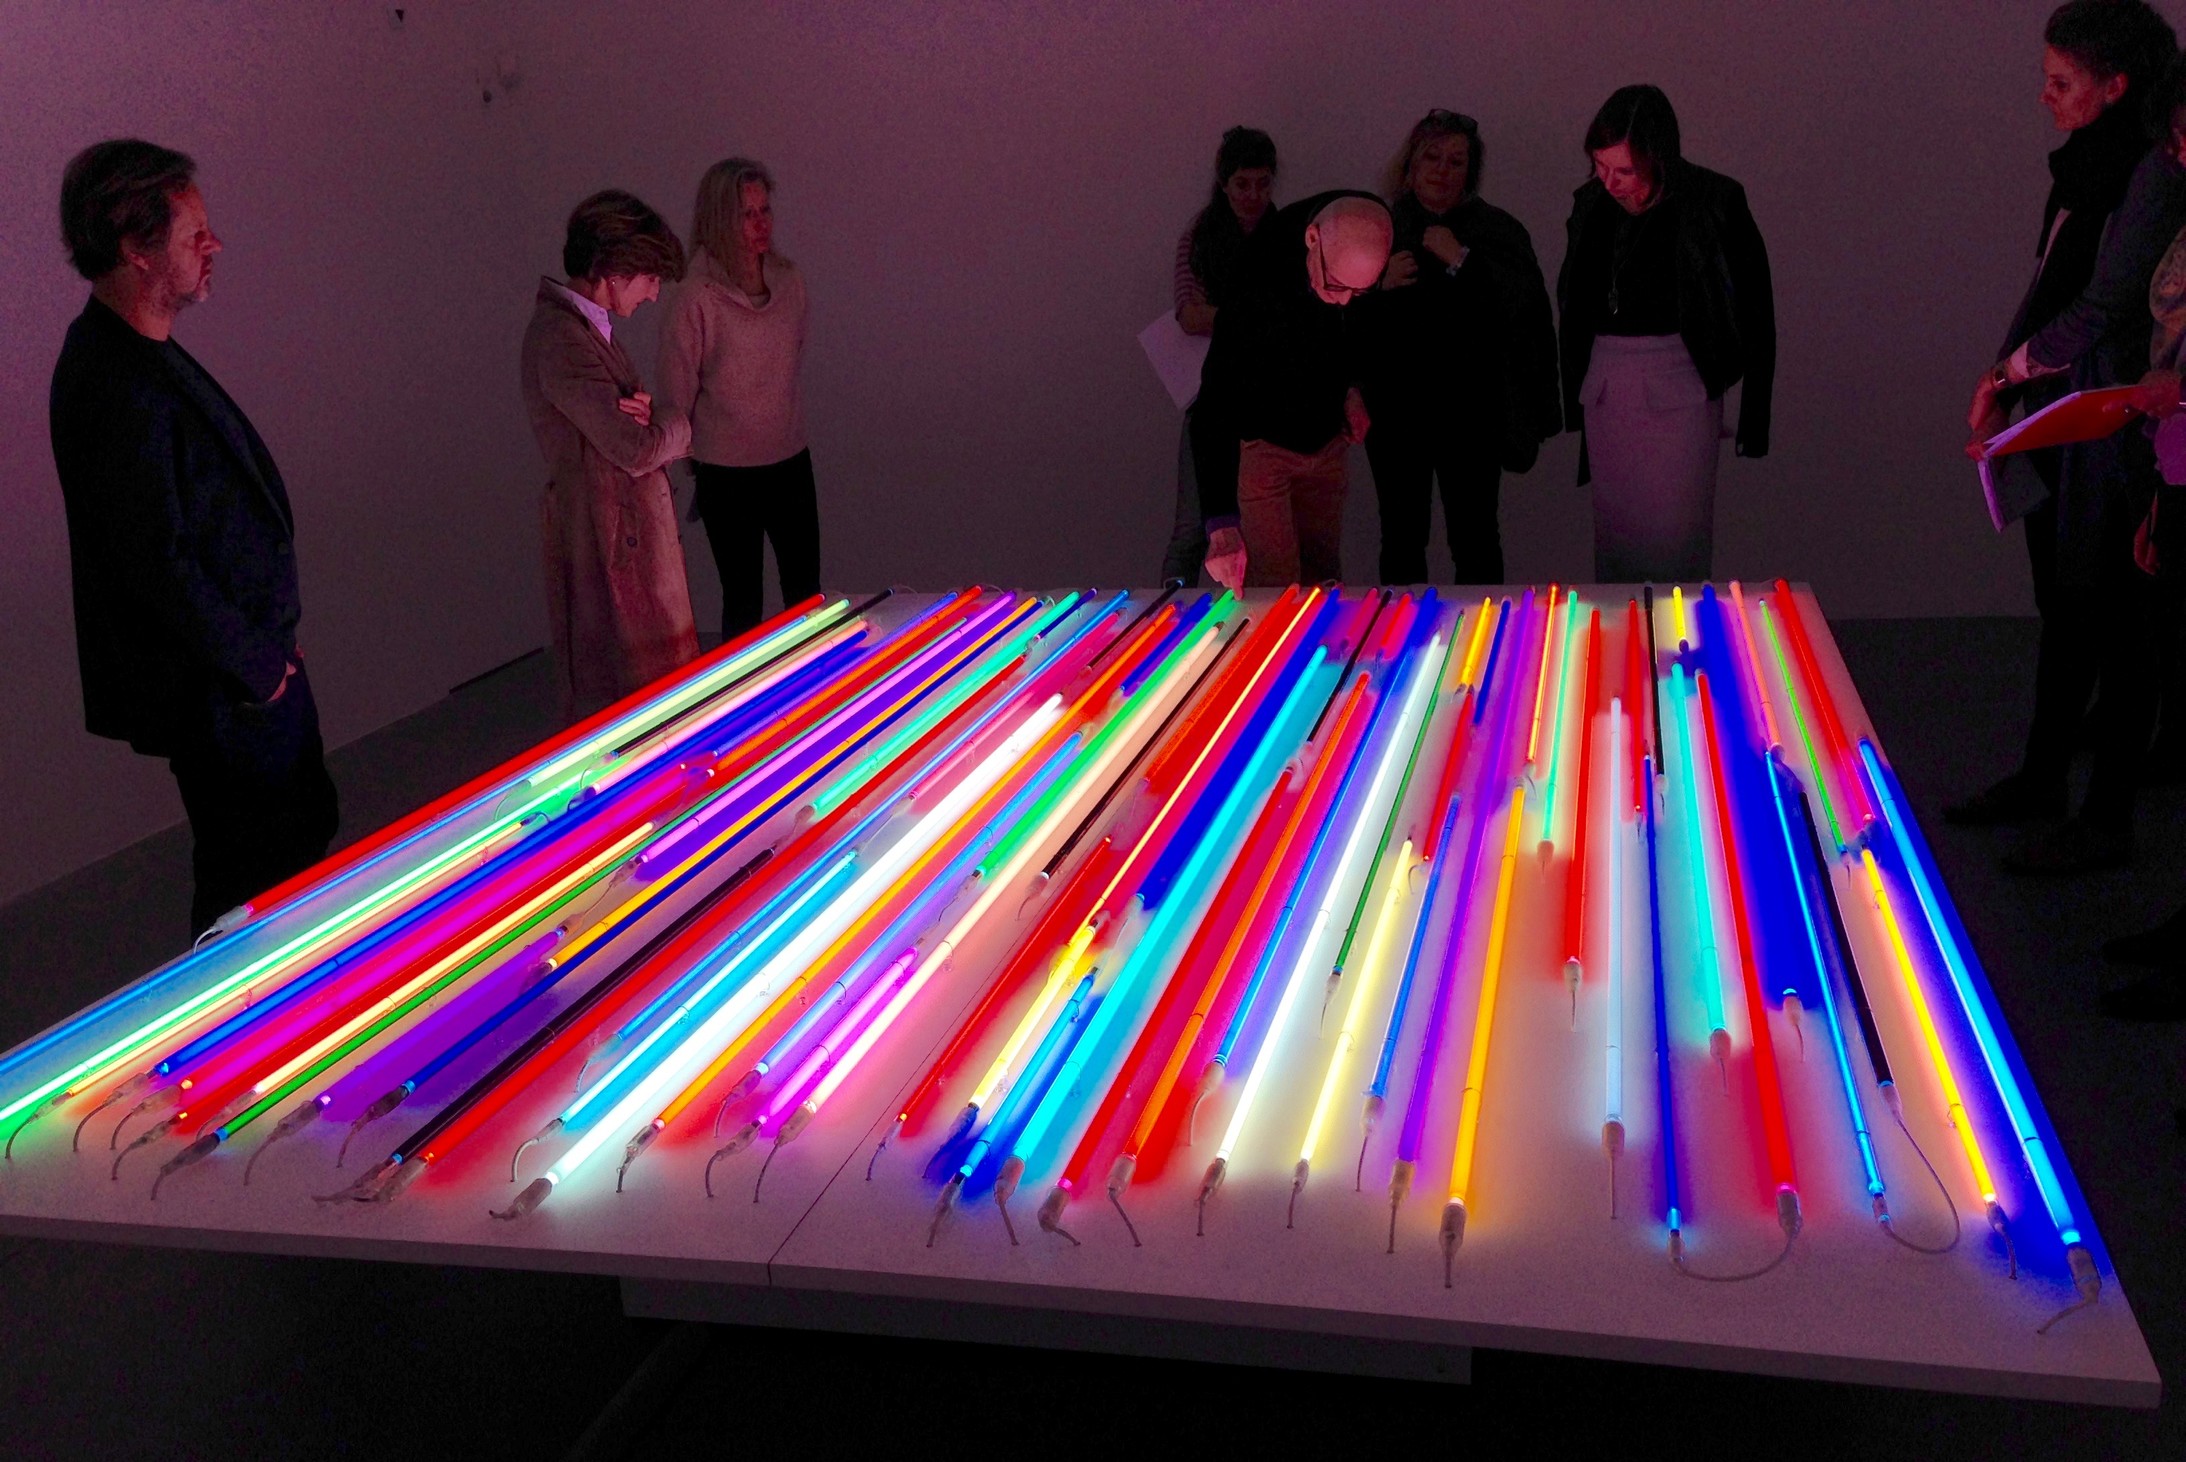 Christian Herdeg (Mitte) im Haus Konstruktiv bei seinem Objekt „Light Stage“ von 2011 (Foto: Journal21.ch)

